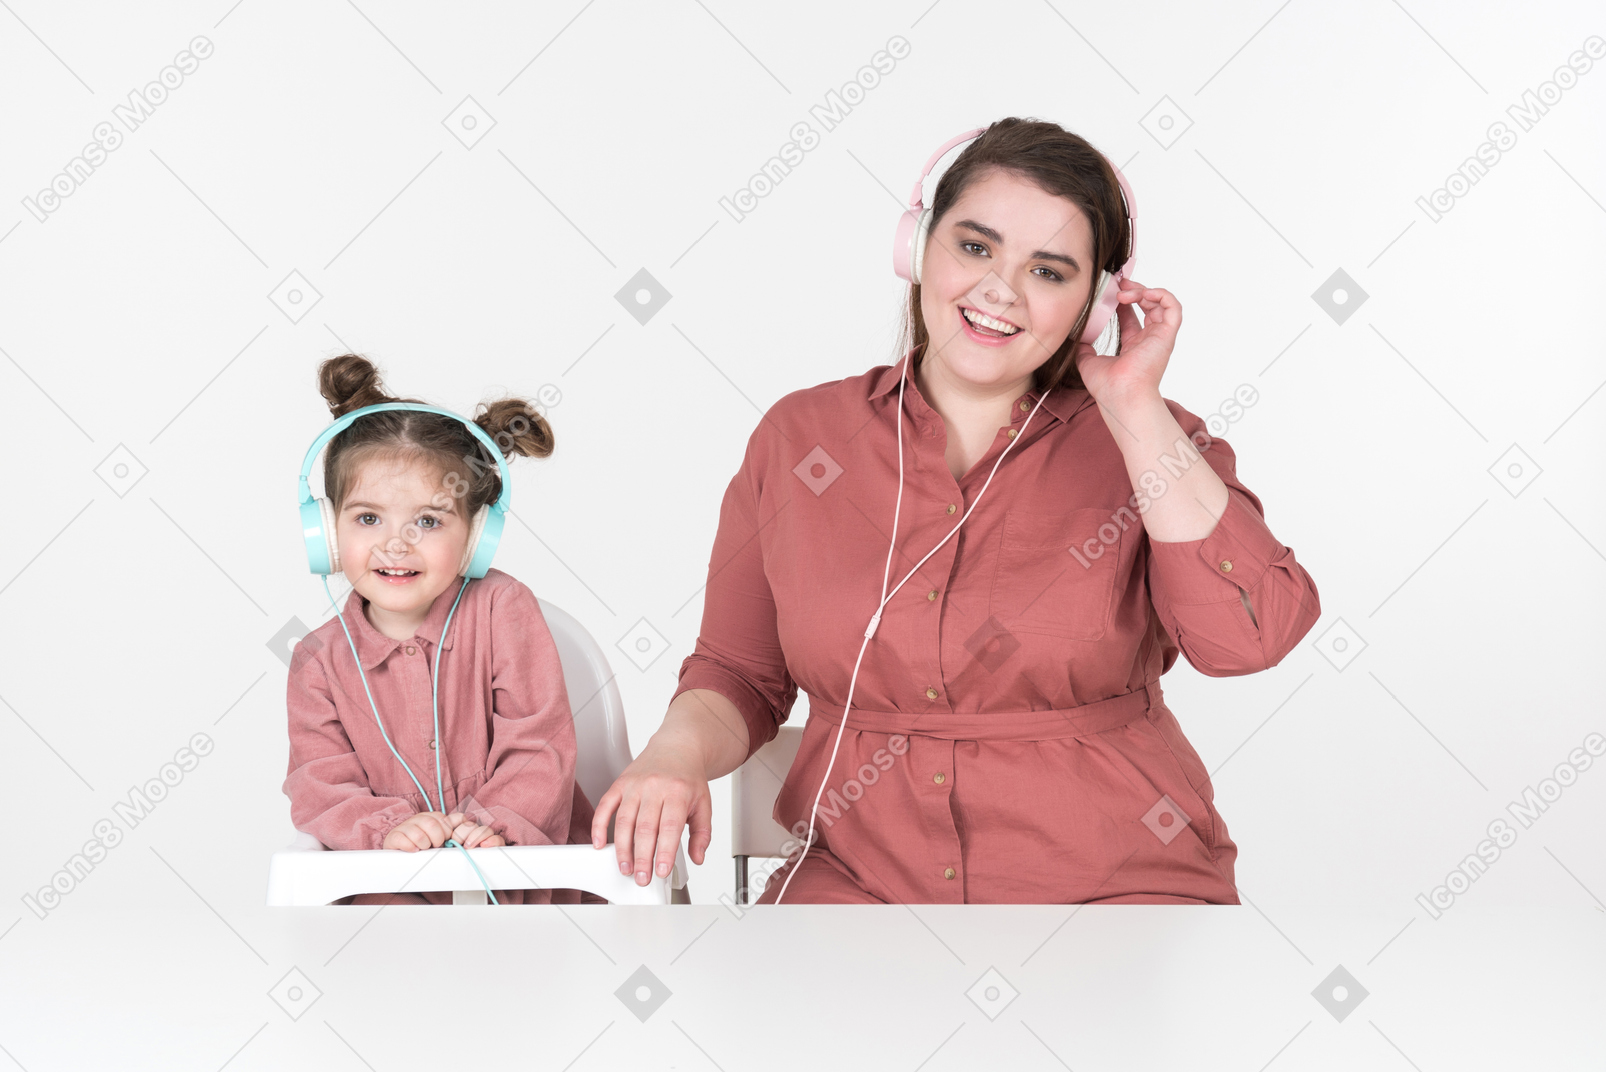 Mutter und ihre kleine tochter, gekleidet in rote und rosa kleidung, sitzen am esstisch und hören zusammen musik